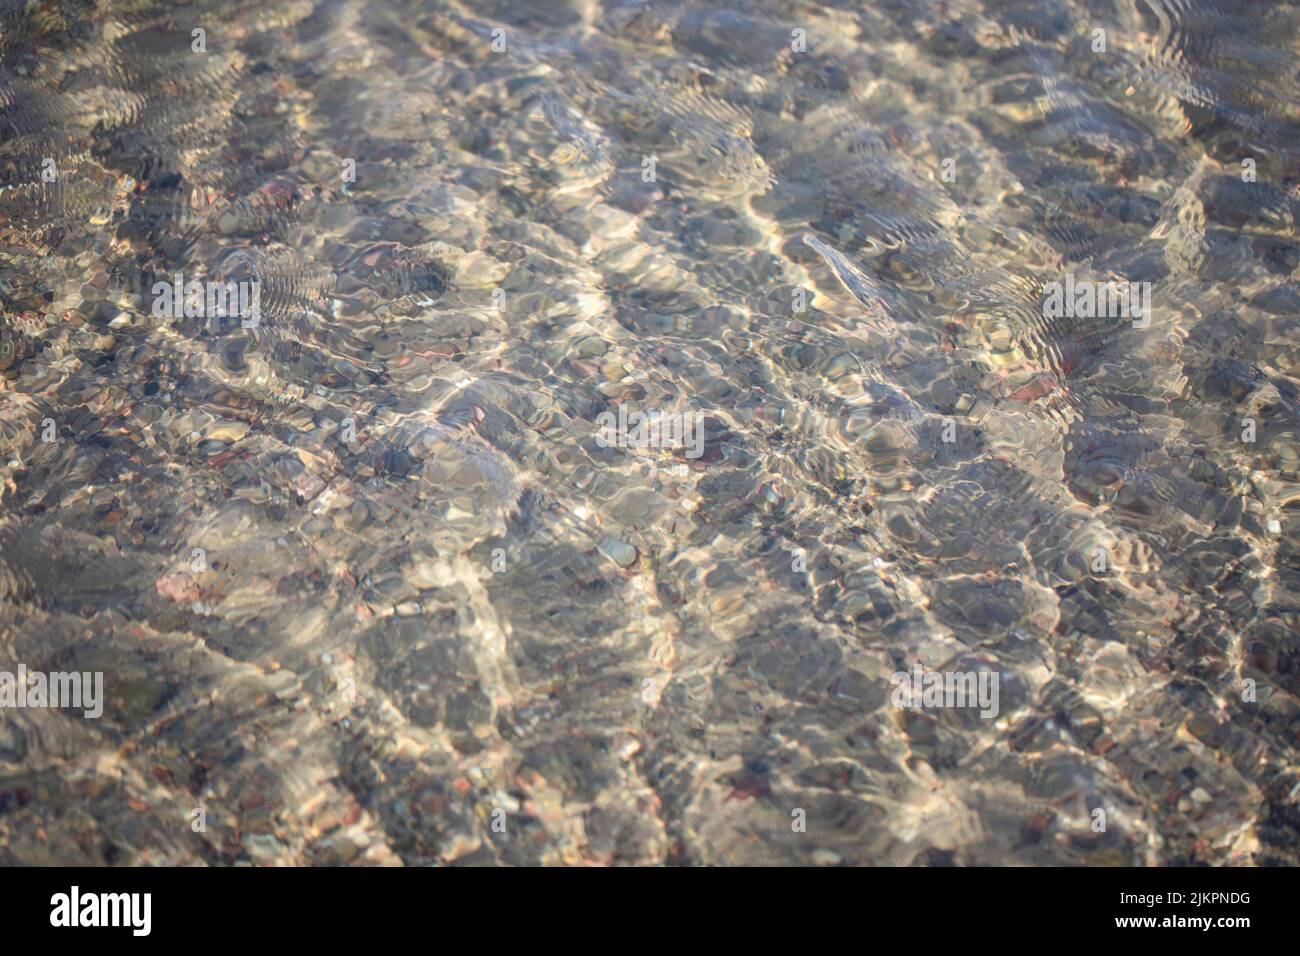 Sonnenreflexe in kristallklaren Gewässern der Ostsee. Wasserstruktur - Wellenmuster, sanfte Windkräusel an der Oberfläche. Stockfoto